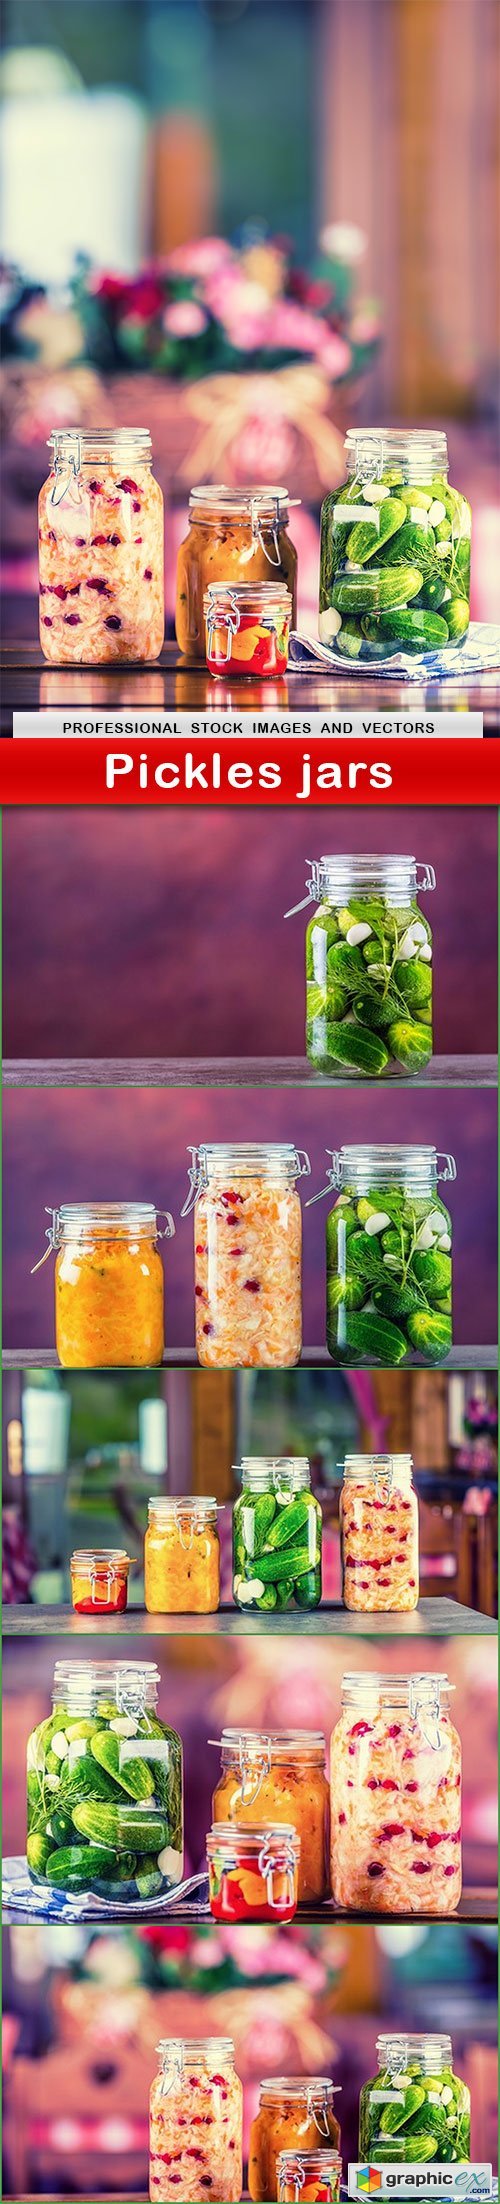 Pickles jars - 6 UHQ JPEG